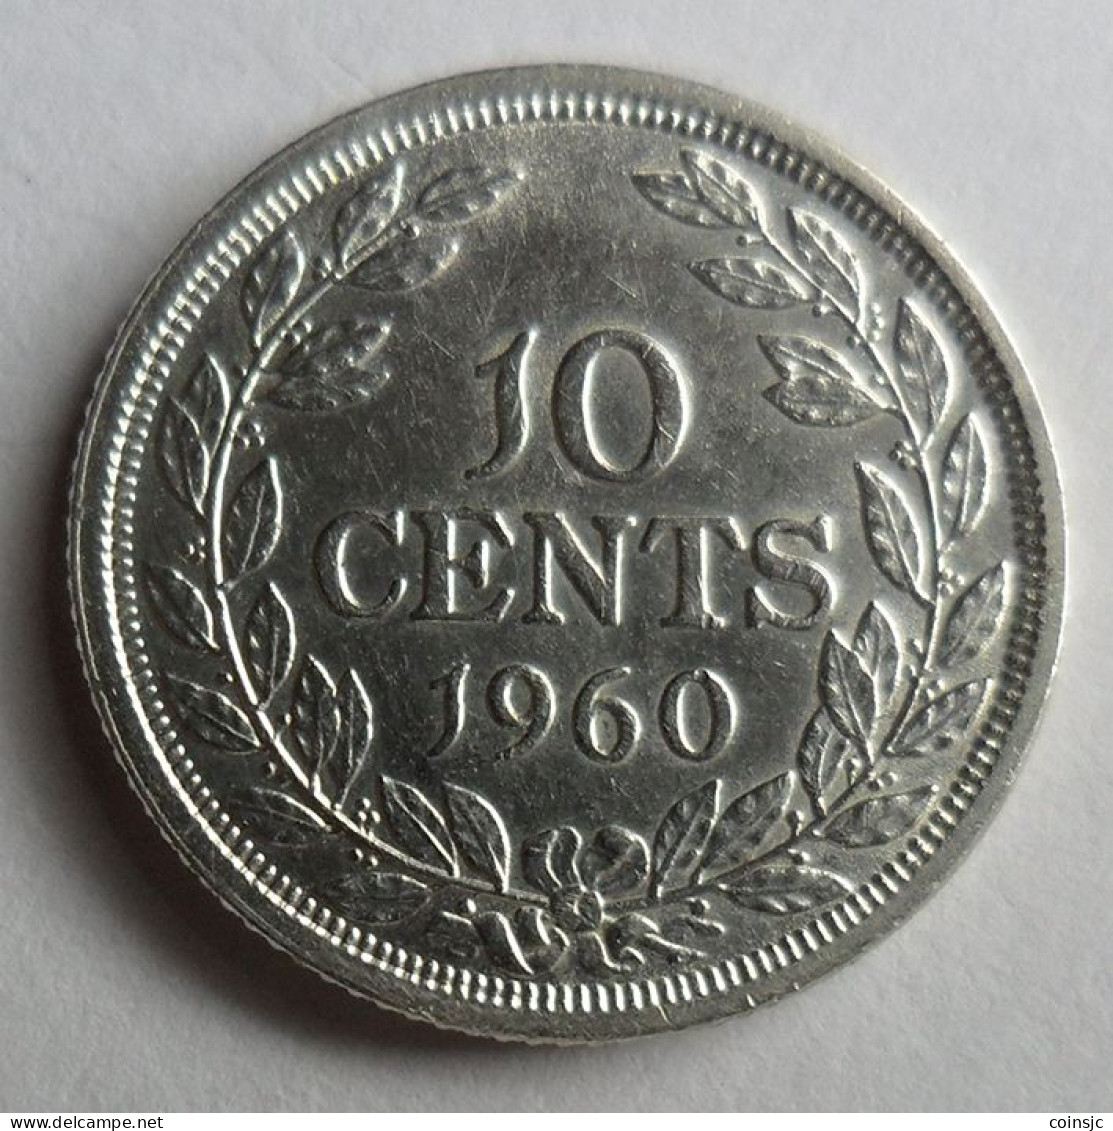 LIBERIA  - 10  Cents - 1960 - Liberia